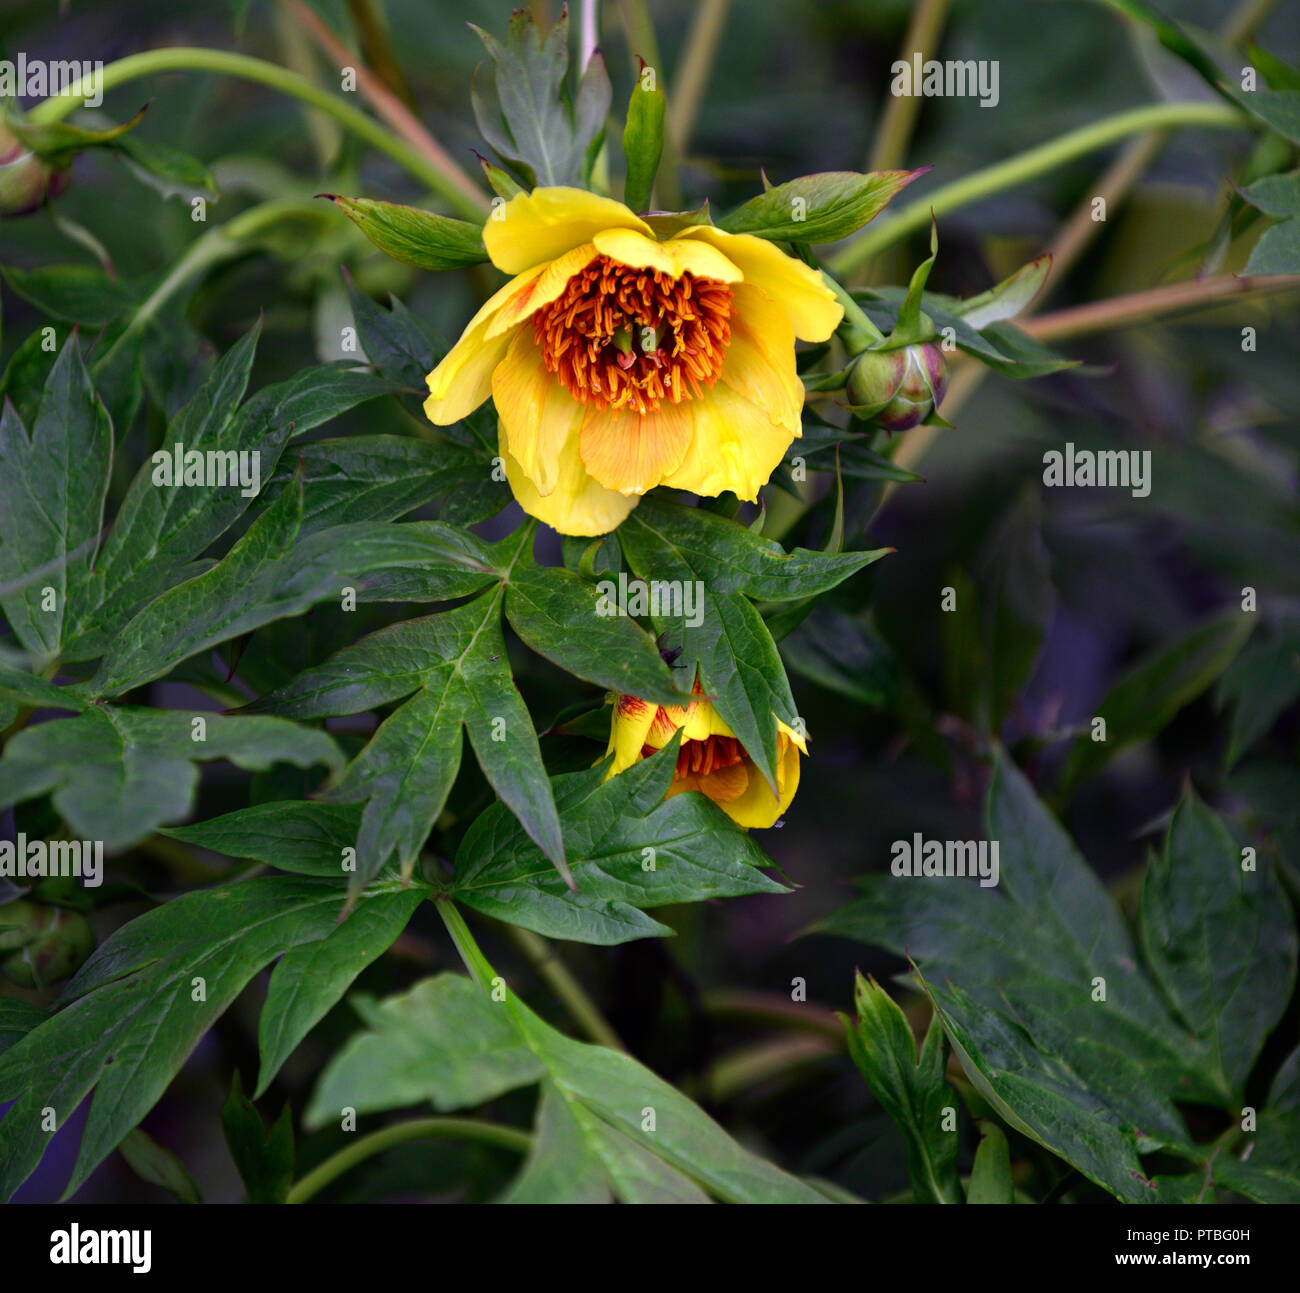 Paeonia delavayi anne rosse,giallo,fiori,Peonia,Le Peonie,tree,il tibetano,fiore,fioritura,bloom,blooming,RM Floral Foto Stock